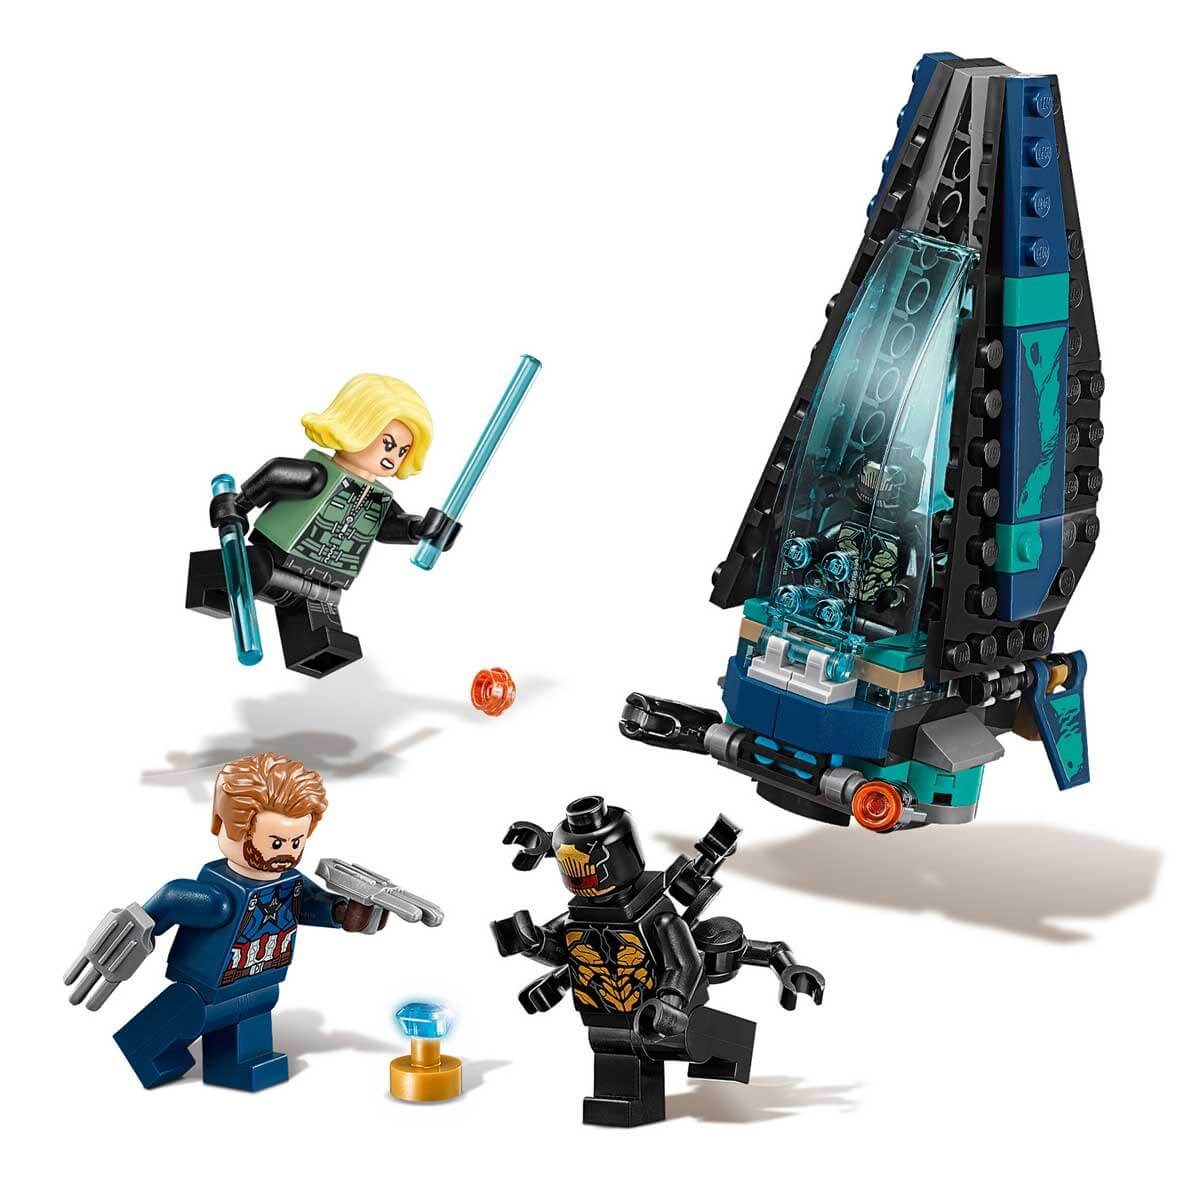 Lego Super Heroes Dropship Attack 76101 